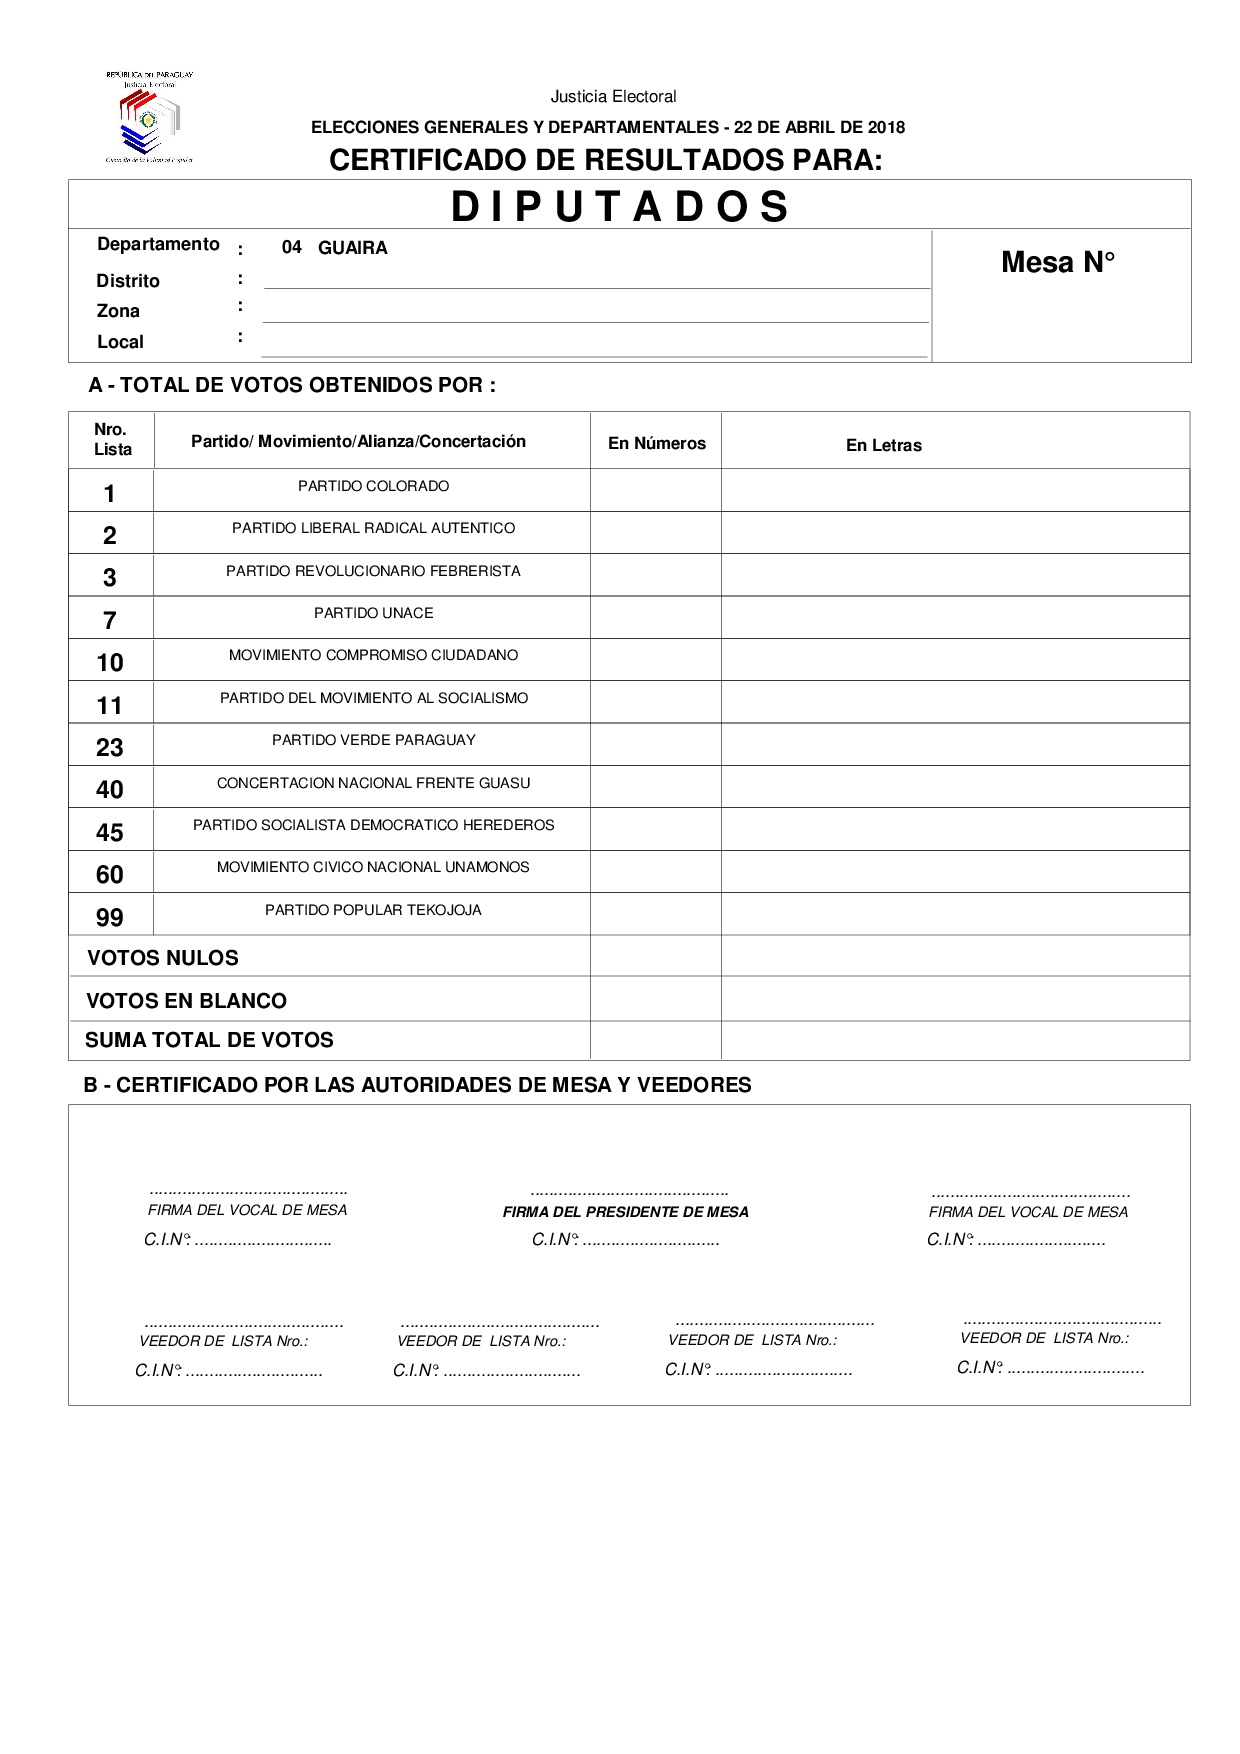 Certificado de Resultados Para Diputados de GUAIRA